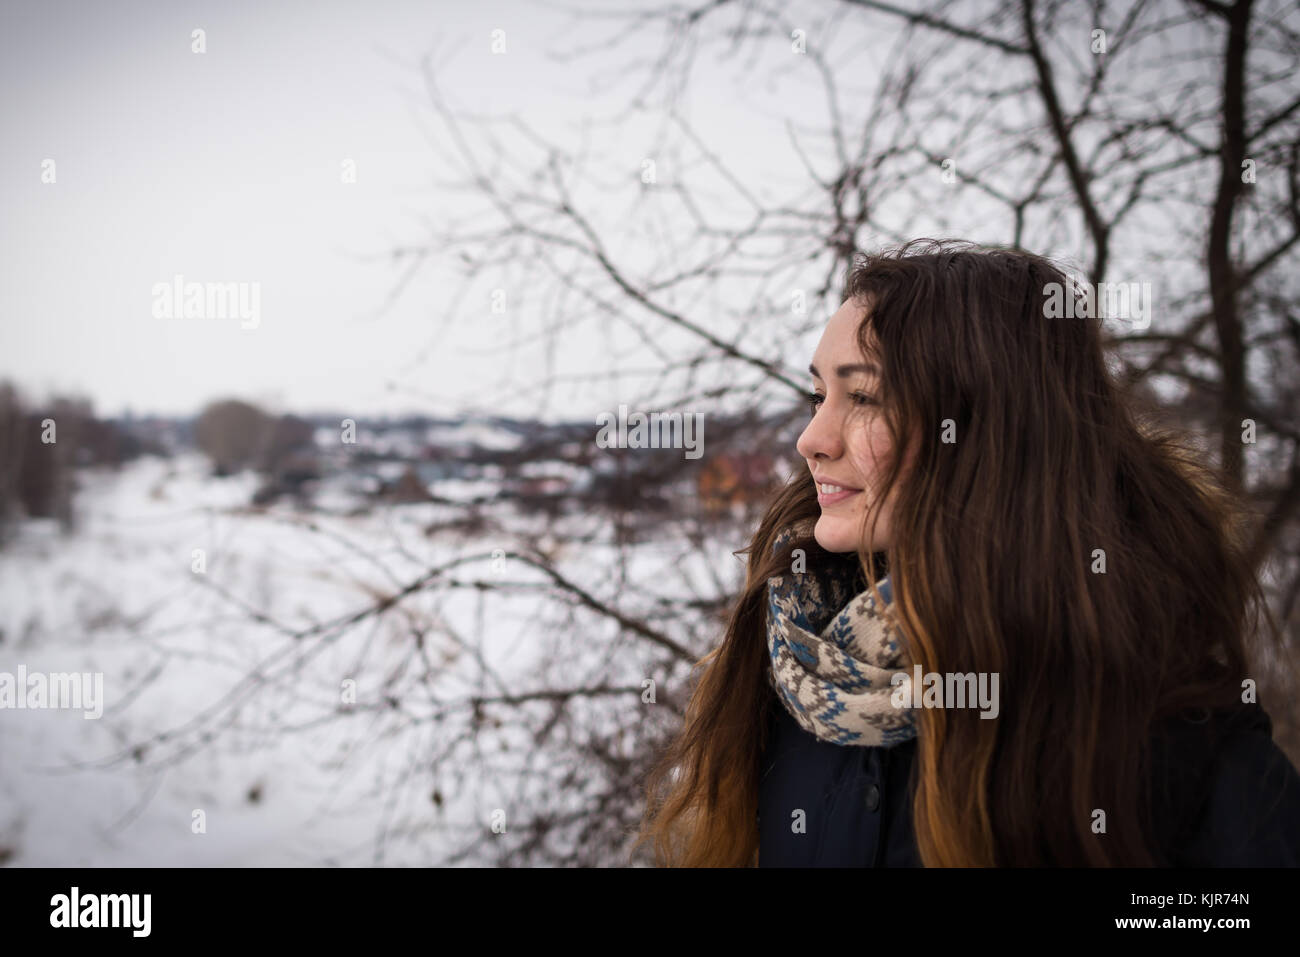 Malinconici e ragazza romantica con bellissimi capelli lunghi sullo sfondo inverno guardando lontano sul paesaggio invernale Foto Stock